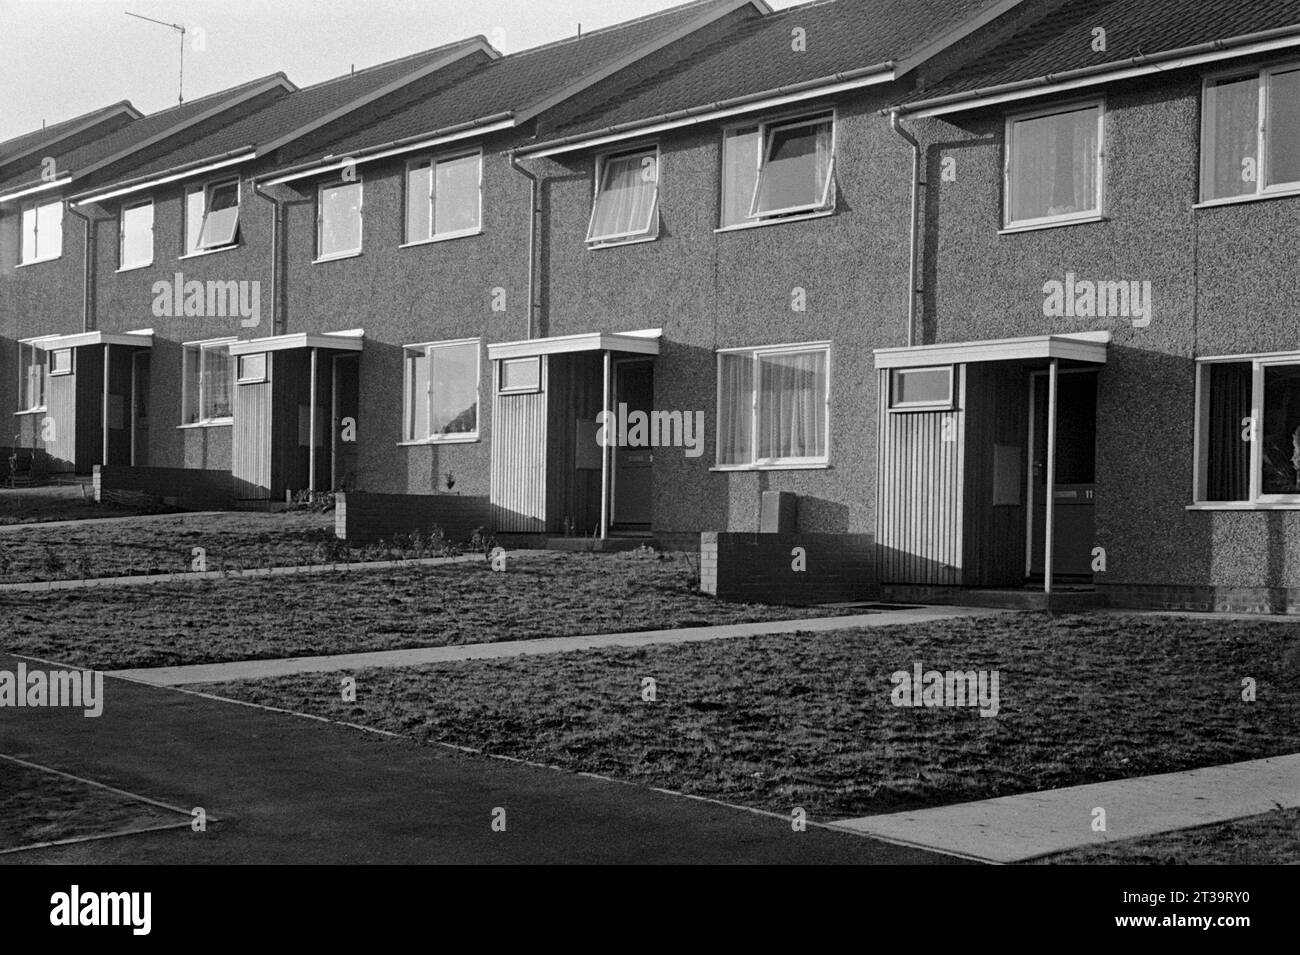 Une rue de nouvelles maisons, adjacente à Robin Hoods Chase, construite pendant le nettoyage des bidonvilles et la démolition de St ann's, Nottingham.1969-1972 Banque D'Images